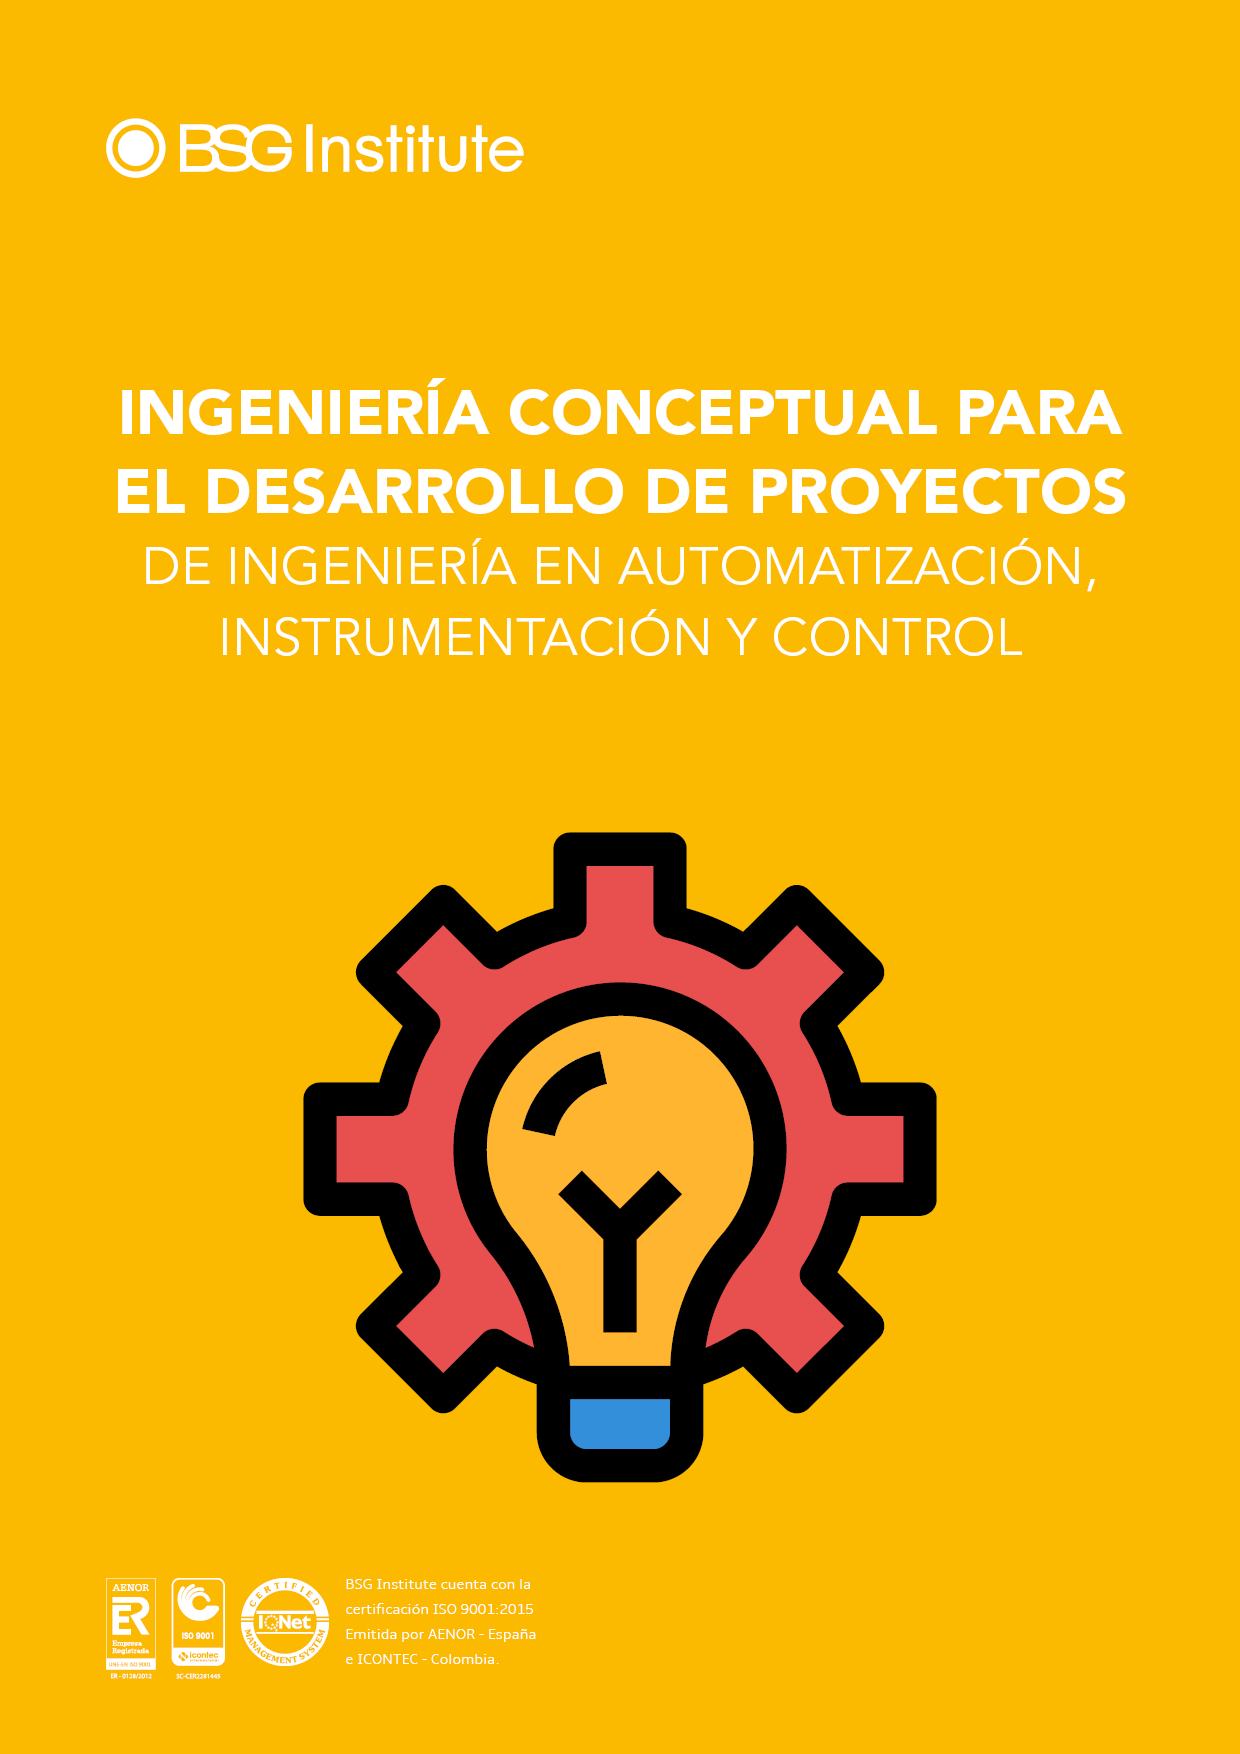 Ingeniería Conceptual para el Desarrollo de Proyectos de Ingeniería en Automatización, Instrumentación y Control